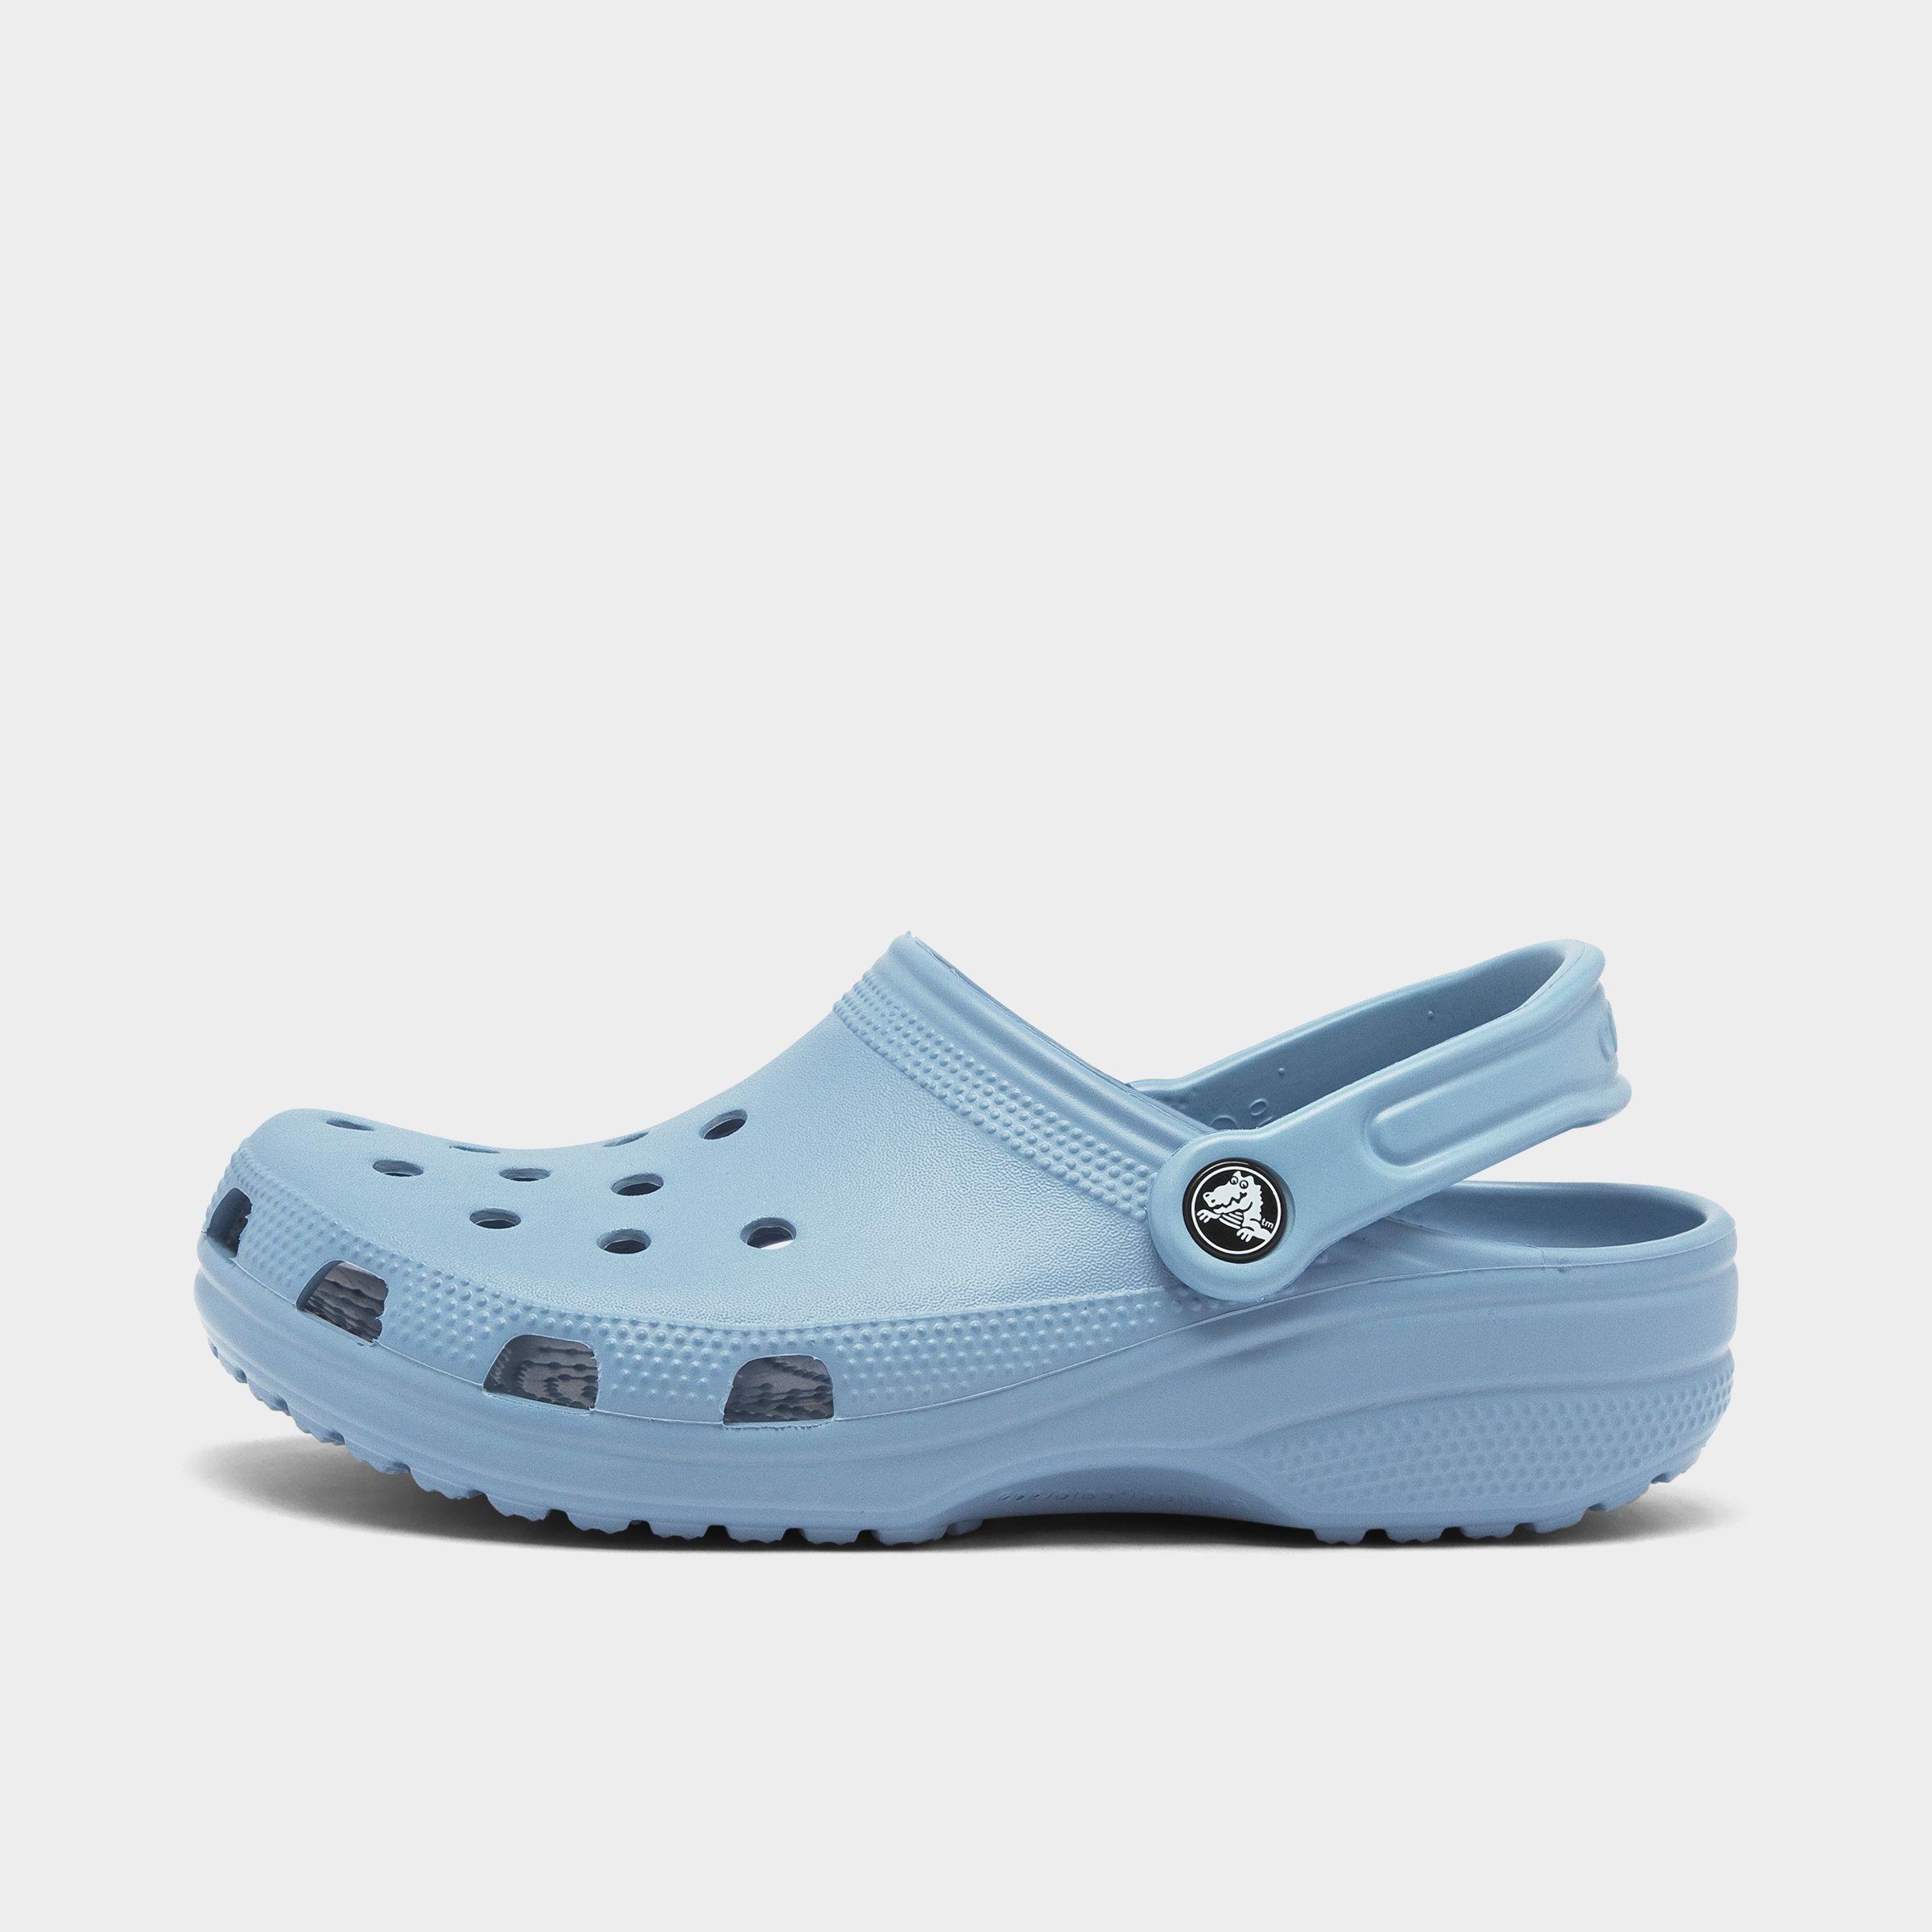 chambray blue crocs size 9